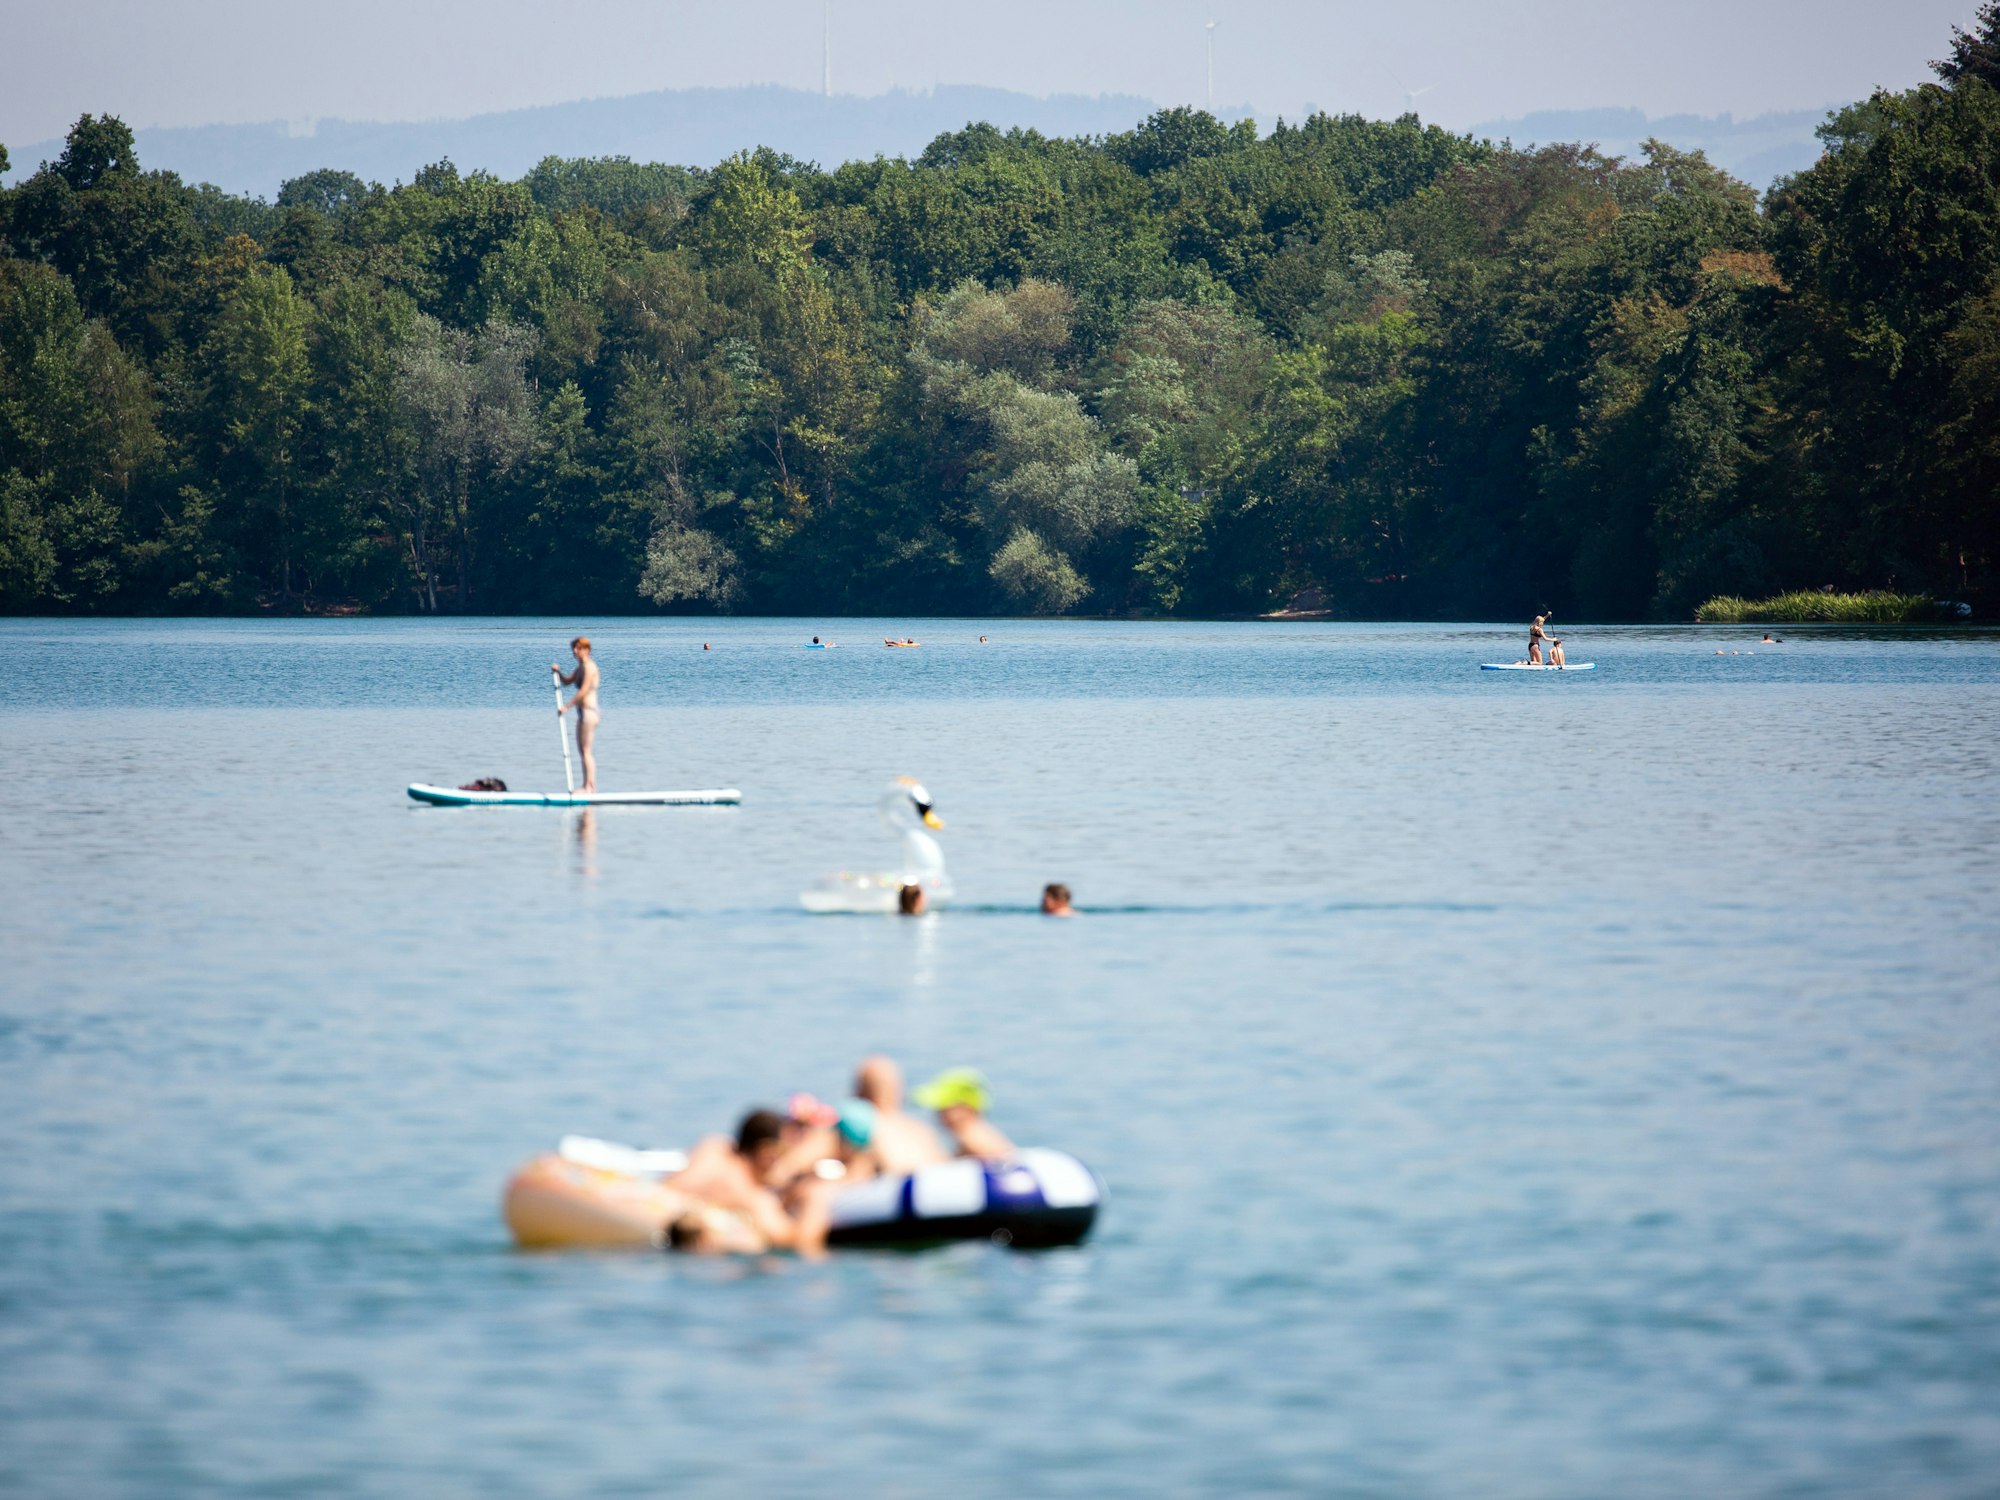 Badegäste in einem See in Baden-Württemberg. Dieses Symbolfoto wurde im Juni 2021 aufgenommen.